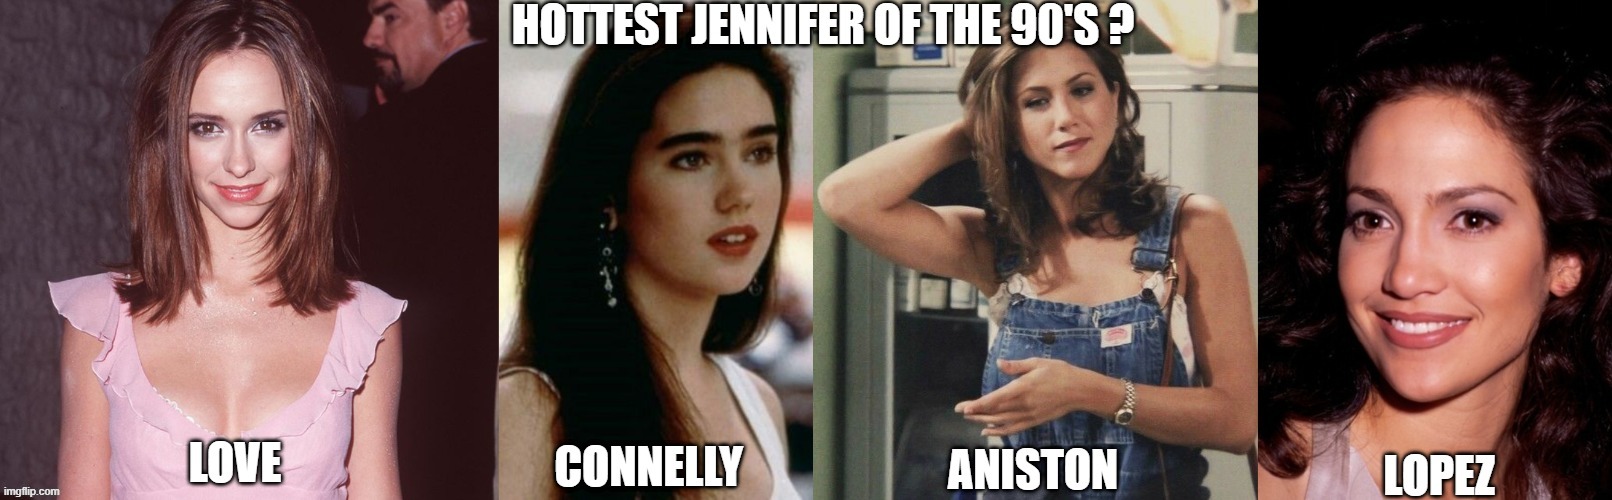 Hottest Jennifer | image tagged in beautiful,hottie,90's,90s kids,beautiful woman,women | made w/ Imgflip meme maker